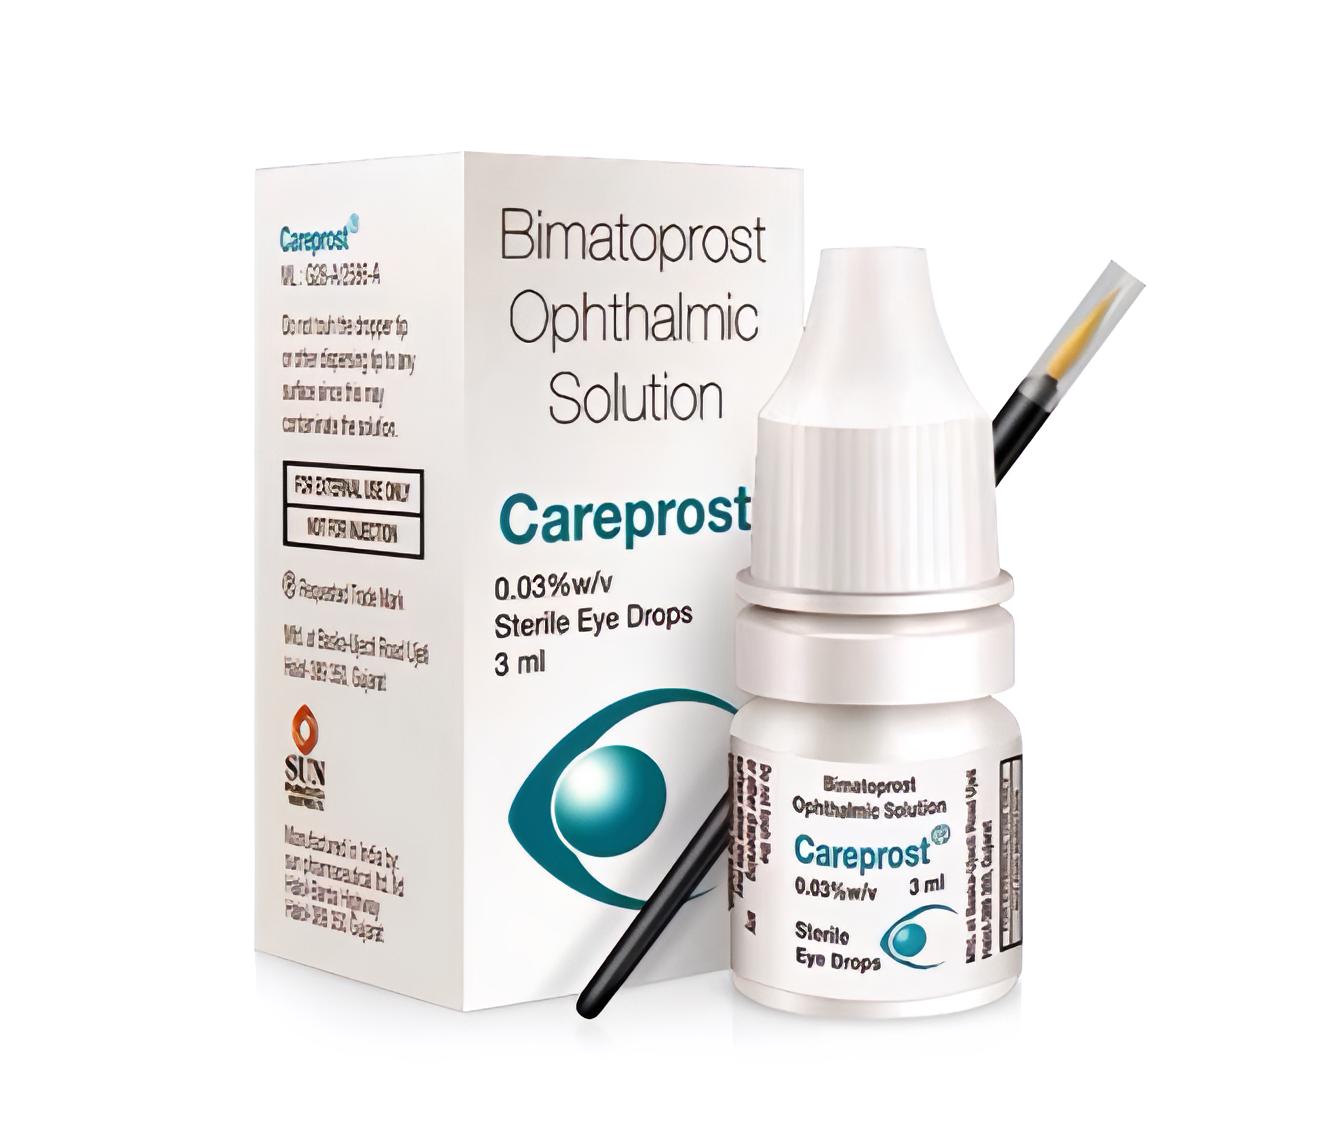 Buy Careprost 3 ml Online For $10 | Genericaura